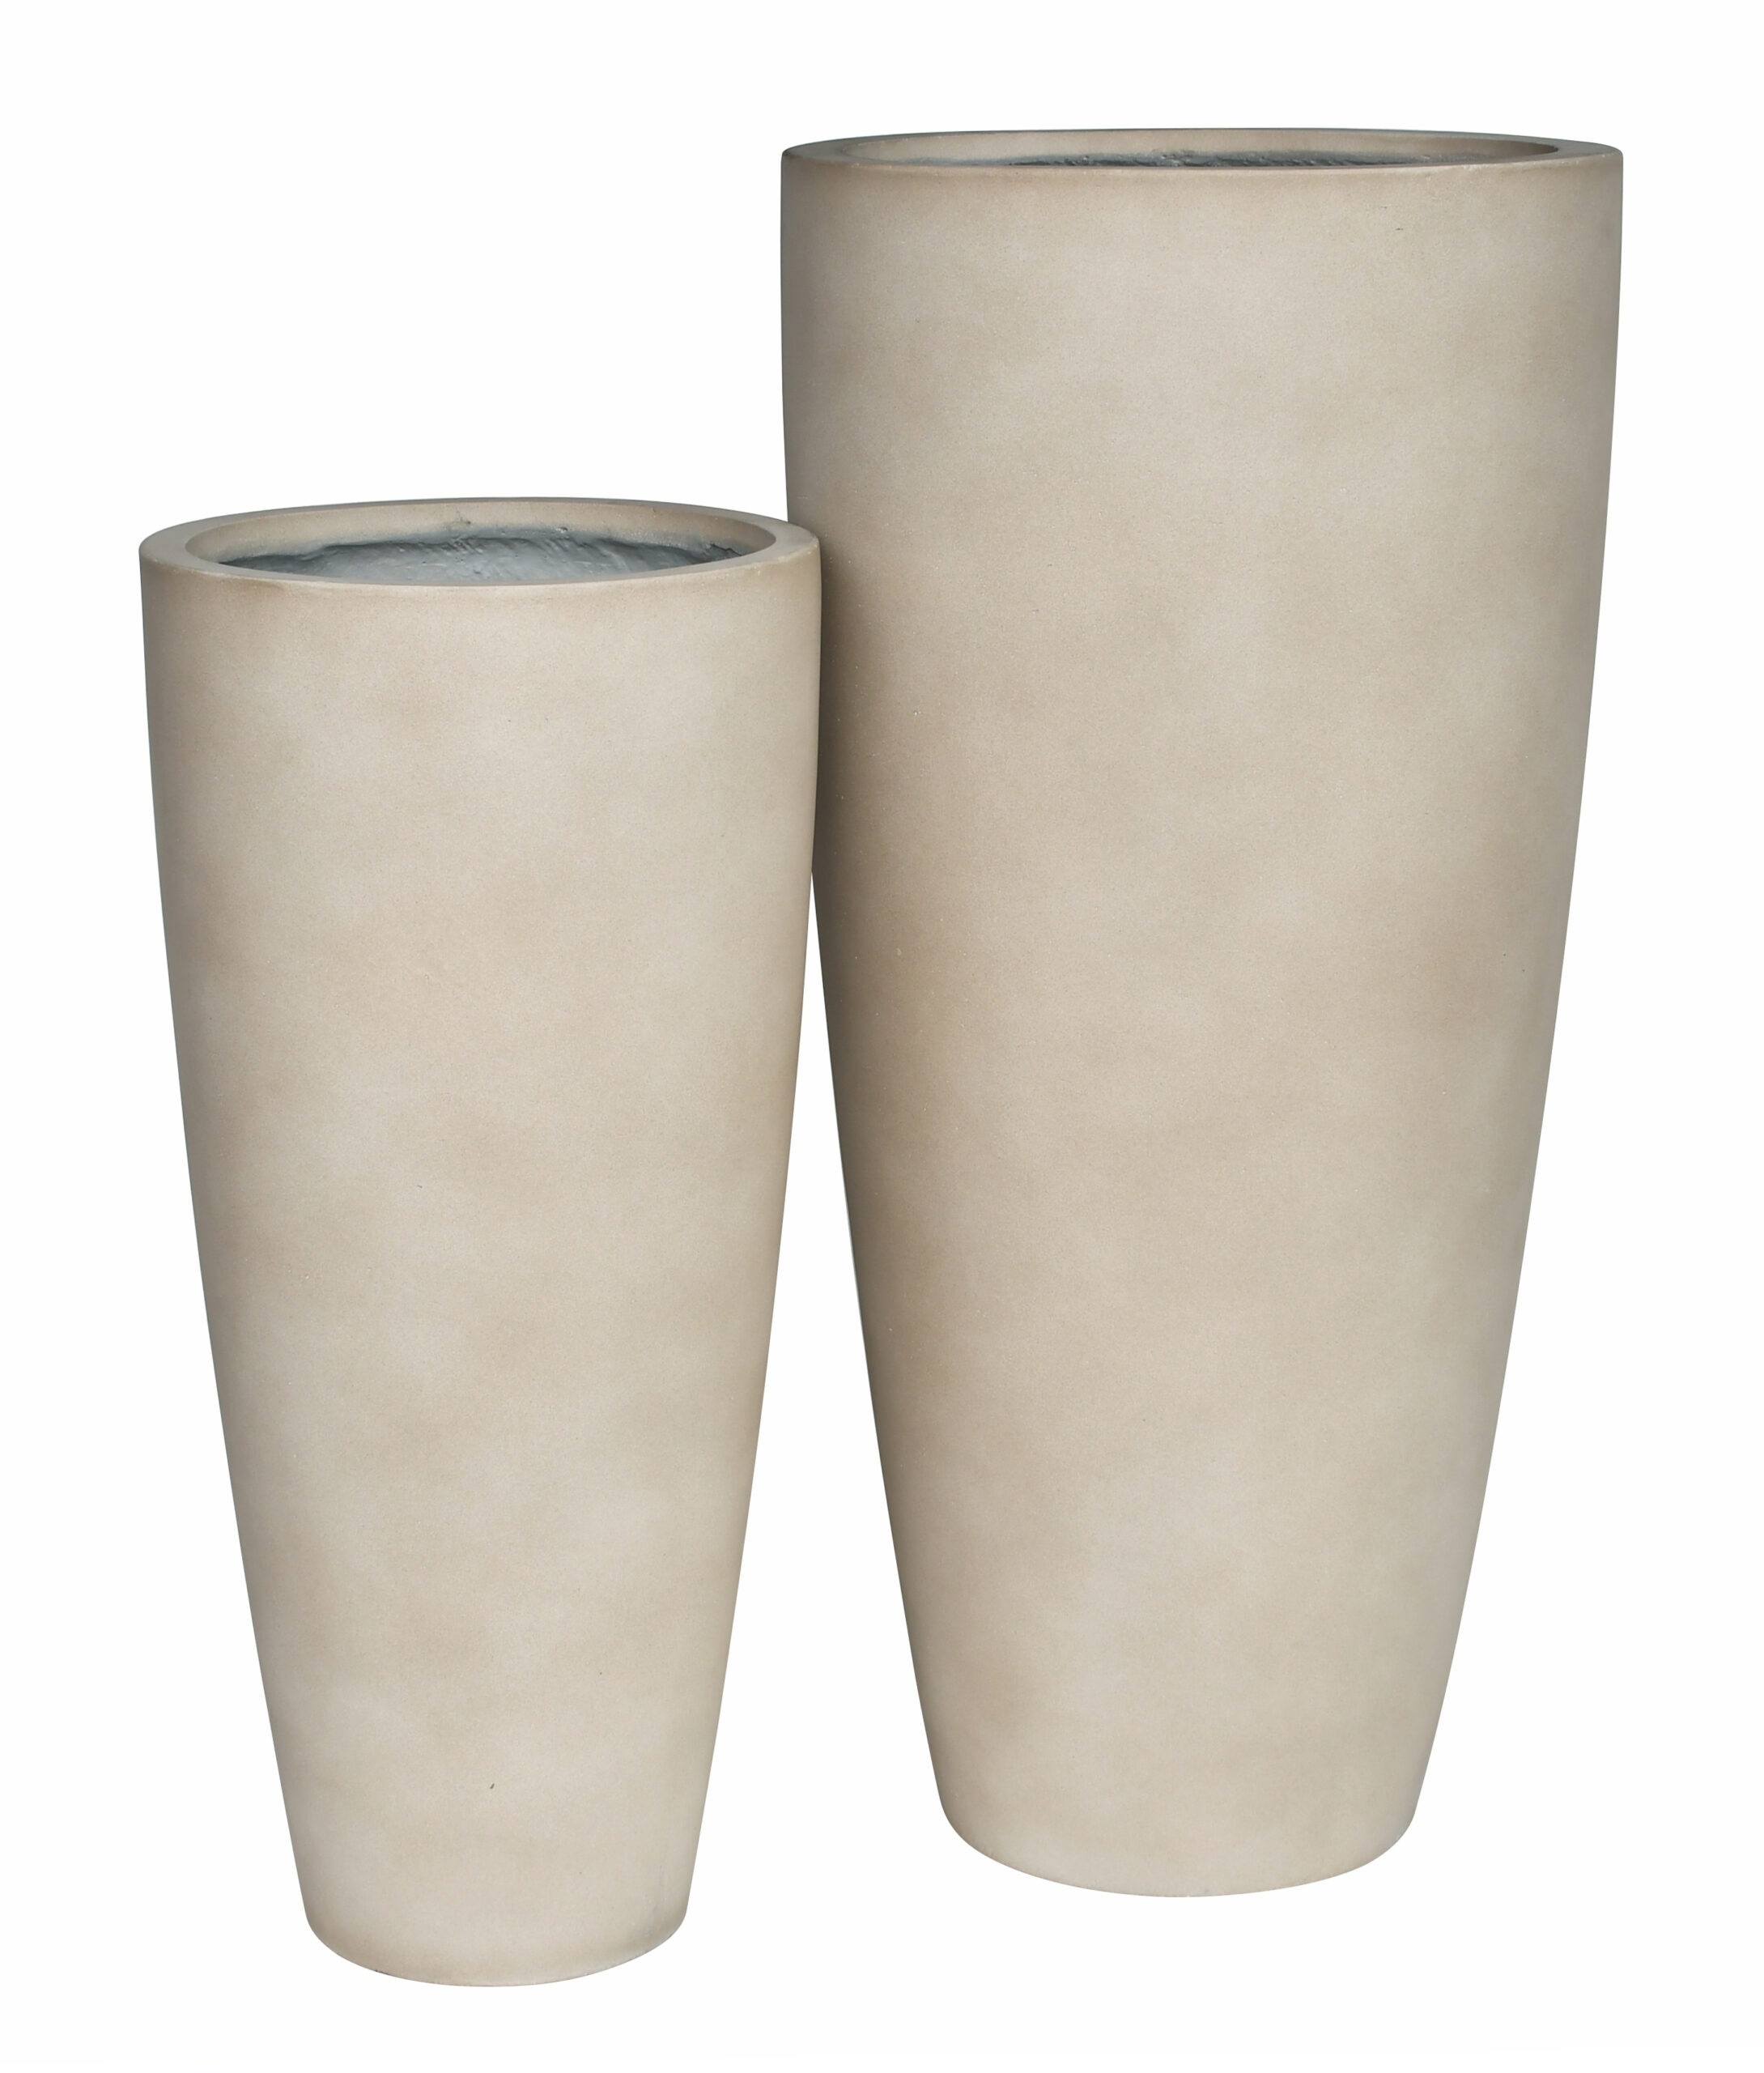 Clayton high vase round set 2 – sandy beige